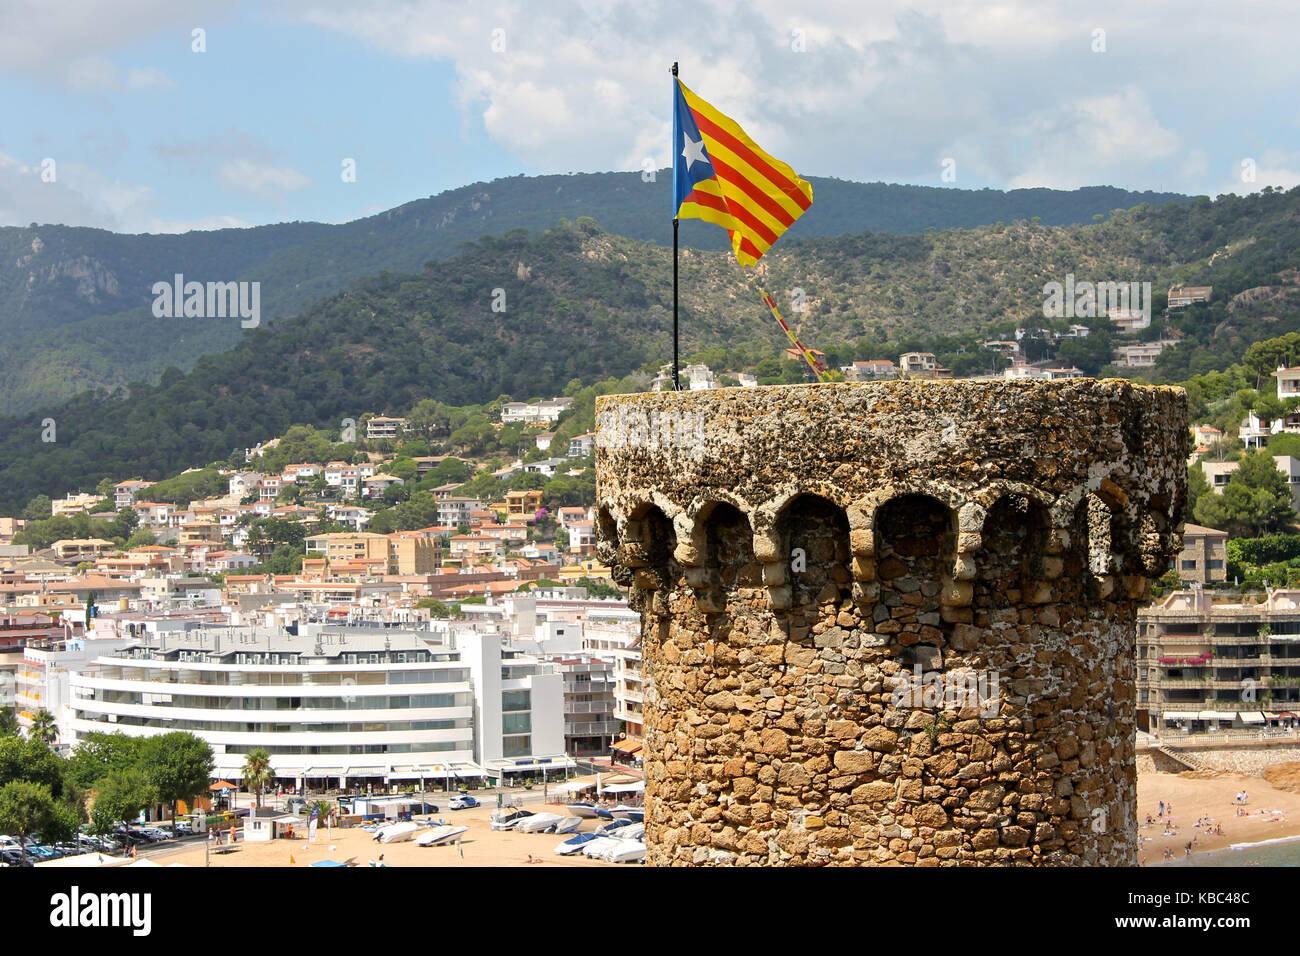 Une senyera ESTELADA Drapeau non officiel, le généralement pilotés par des partisans de l'indépendance catalane, agitant sur la tour de la forteresse de Tossa de mar, Catalogne, s Banque D'Images